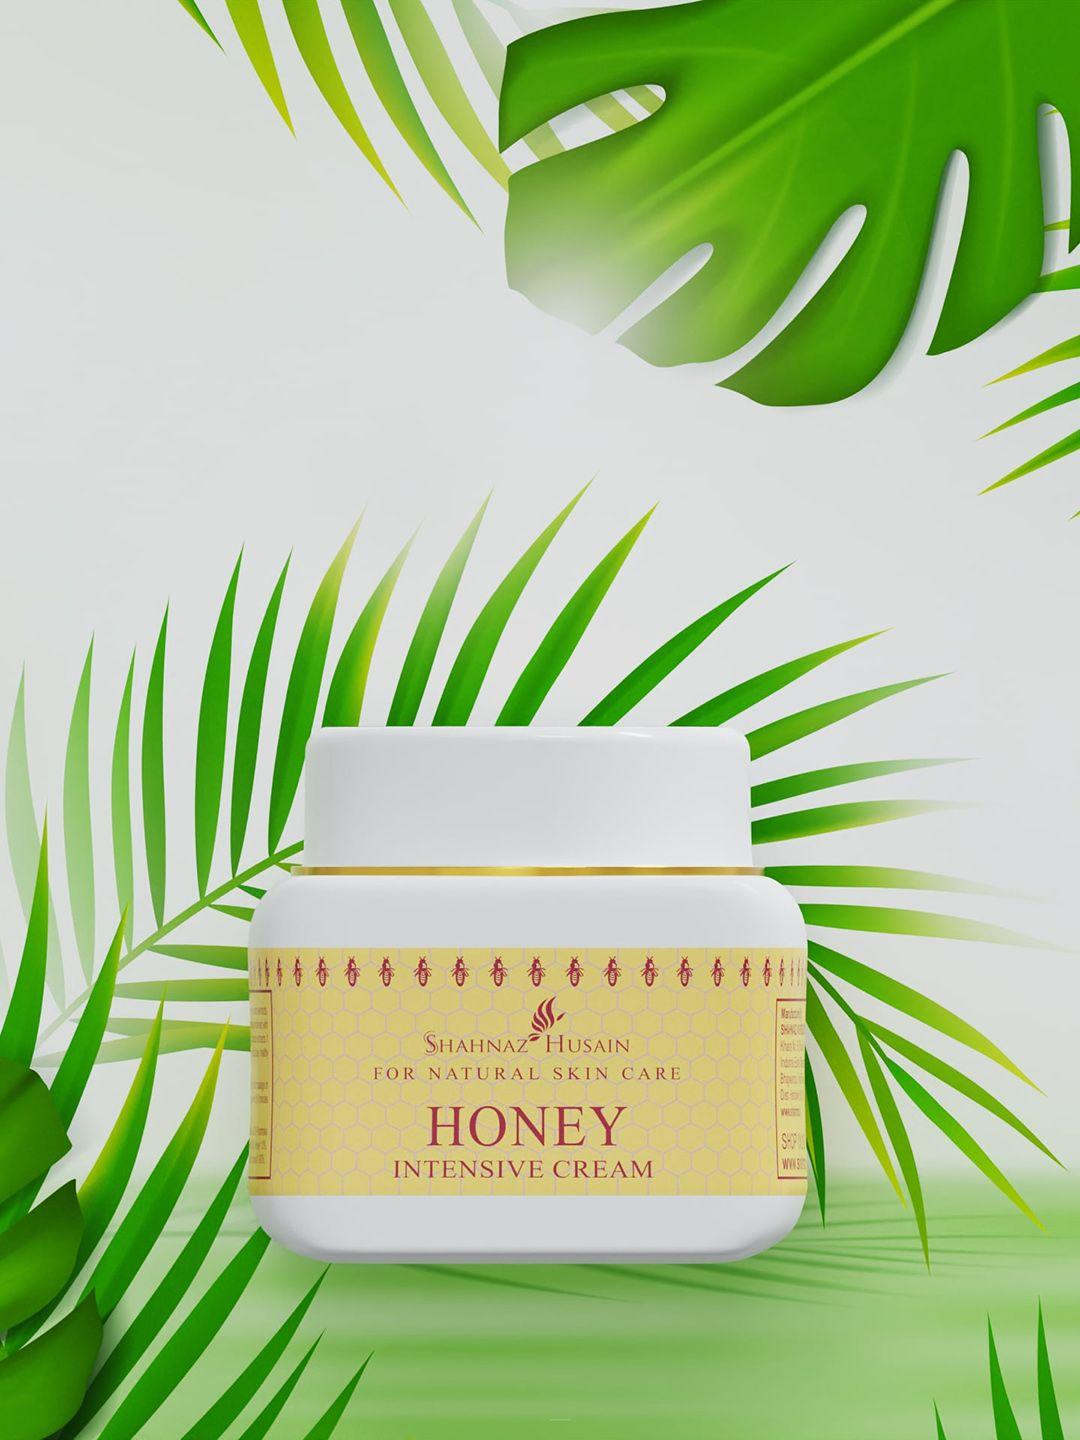 shahnaz husain honey intensive cream for natural skin care - 40 g